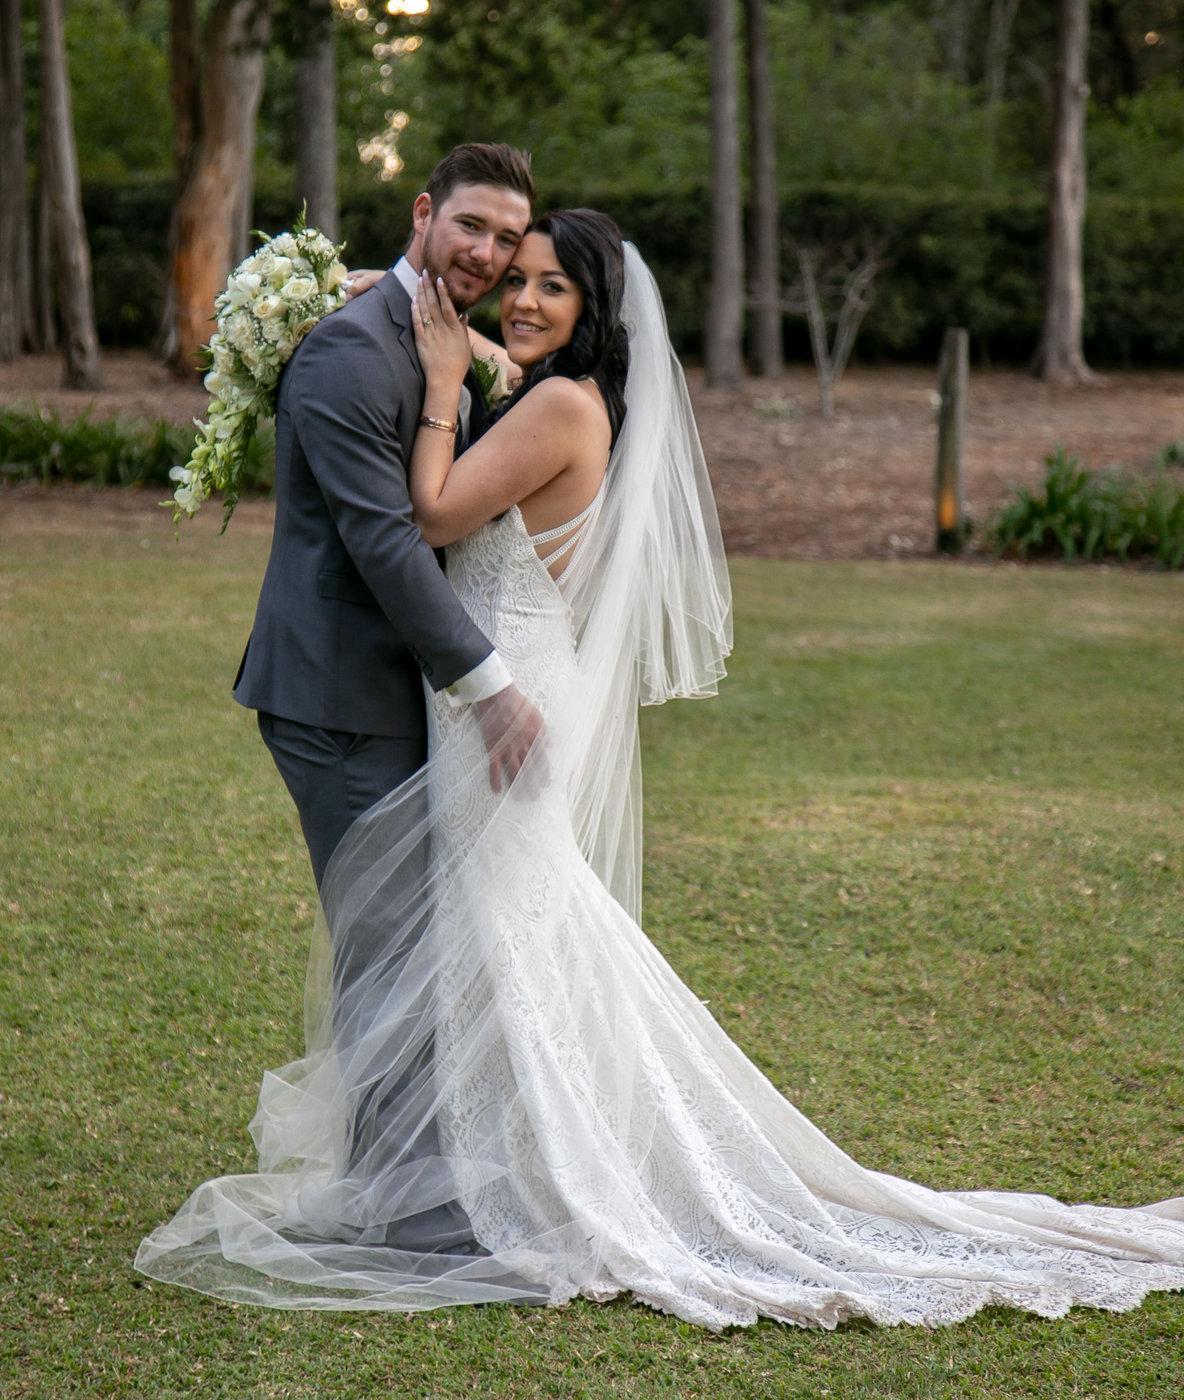 Wedding Photography Couple embracing